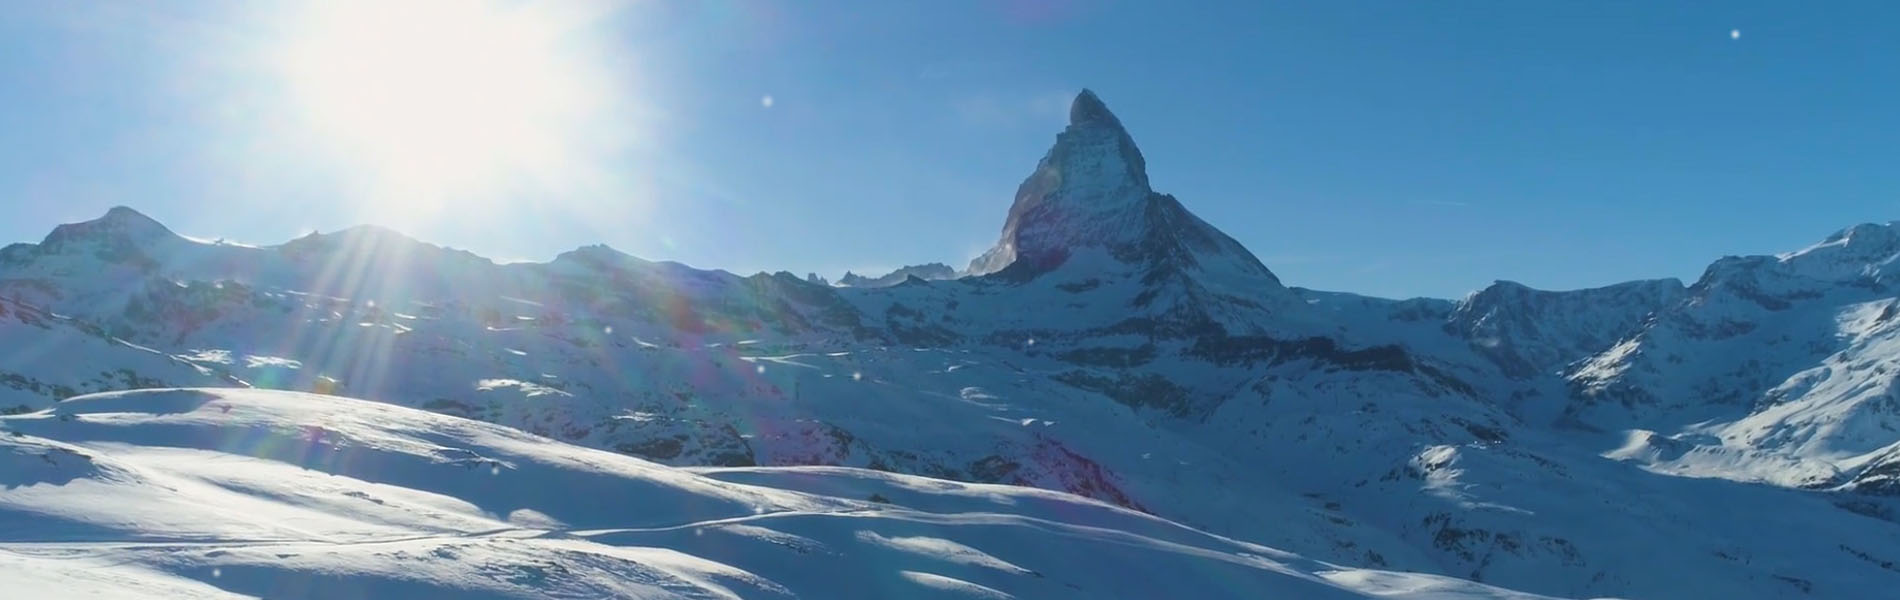 高品質な翻訳をご提供する株式会社シュタールジャパンの公式ホームページのトップページ写真です。世界に展開するシュタールグループ本社スイスの山の写真を用いています。